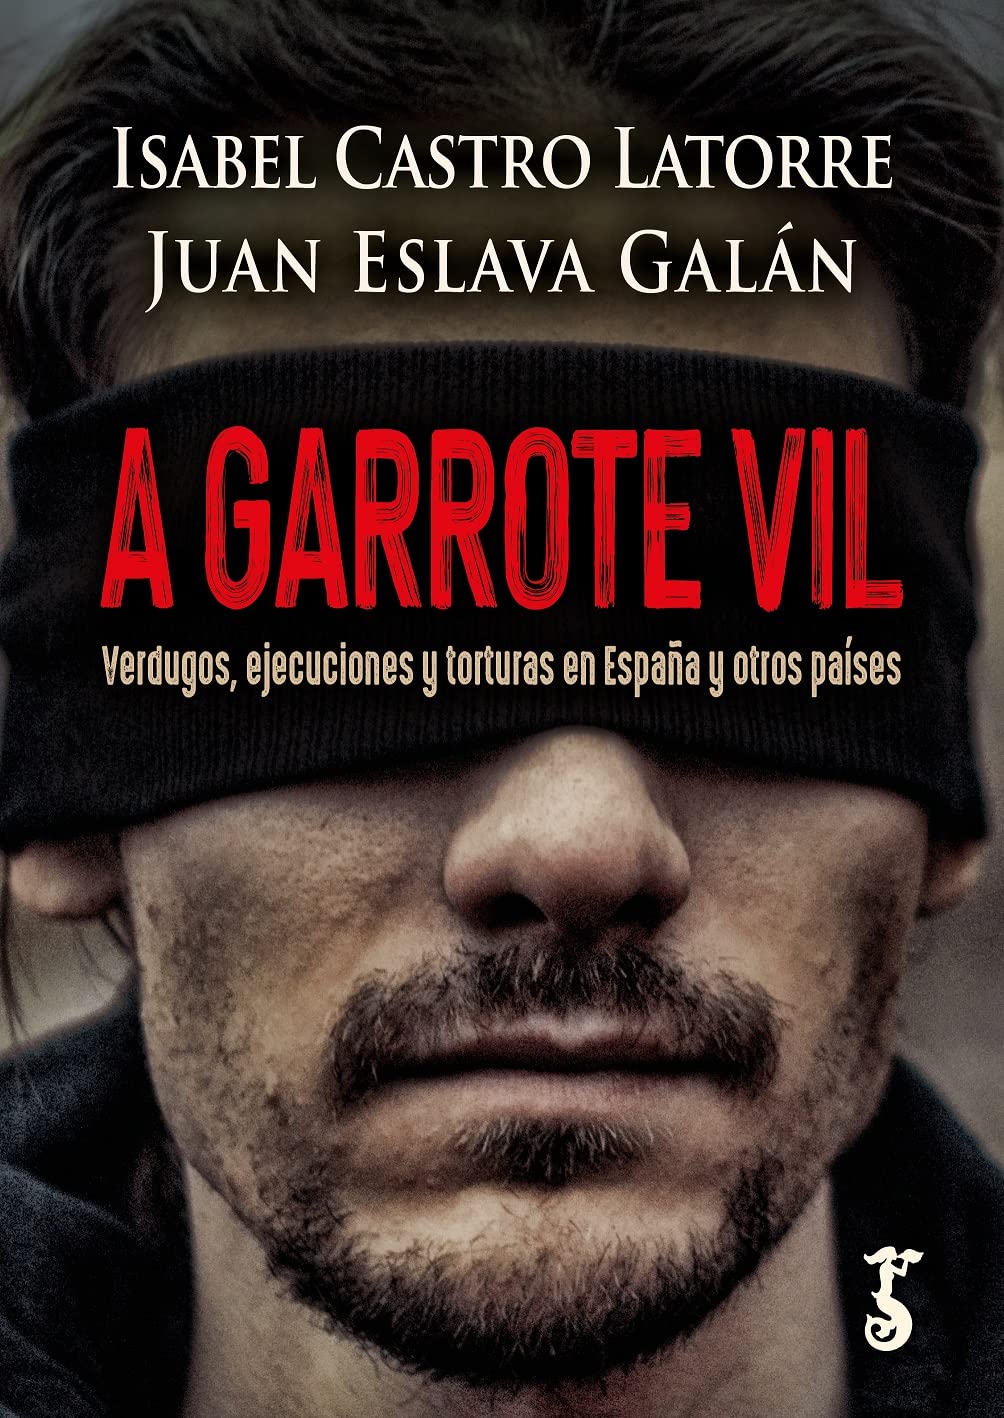 Juan Eslava Galán - A garrote vil